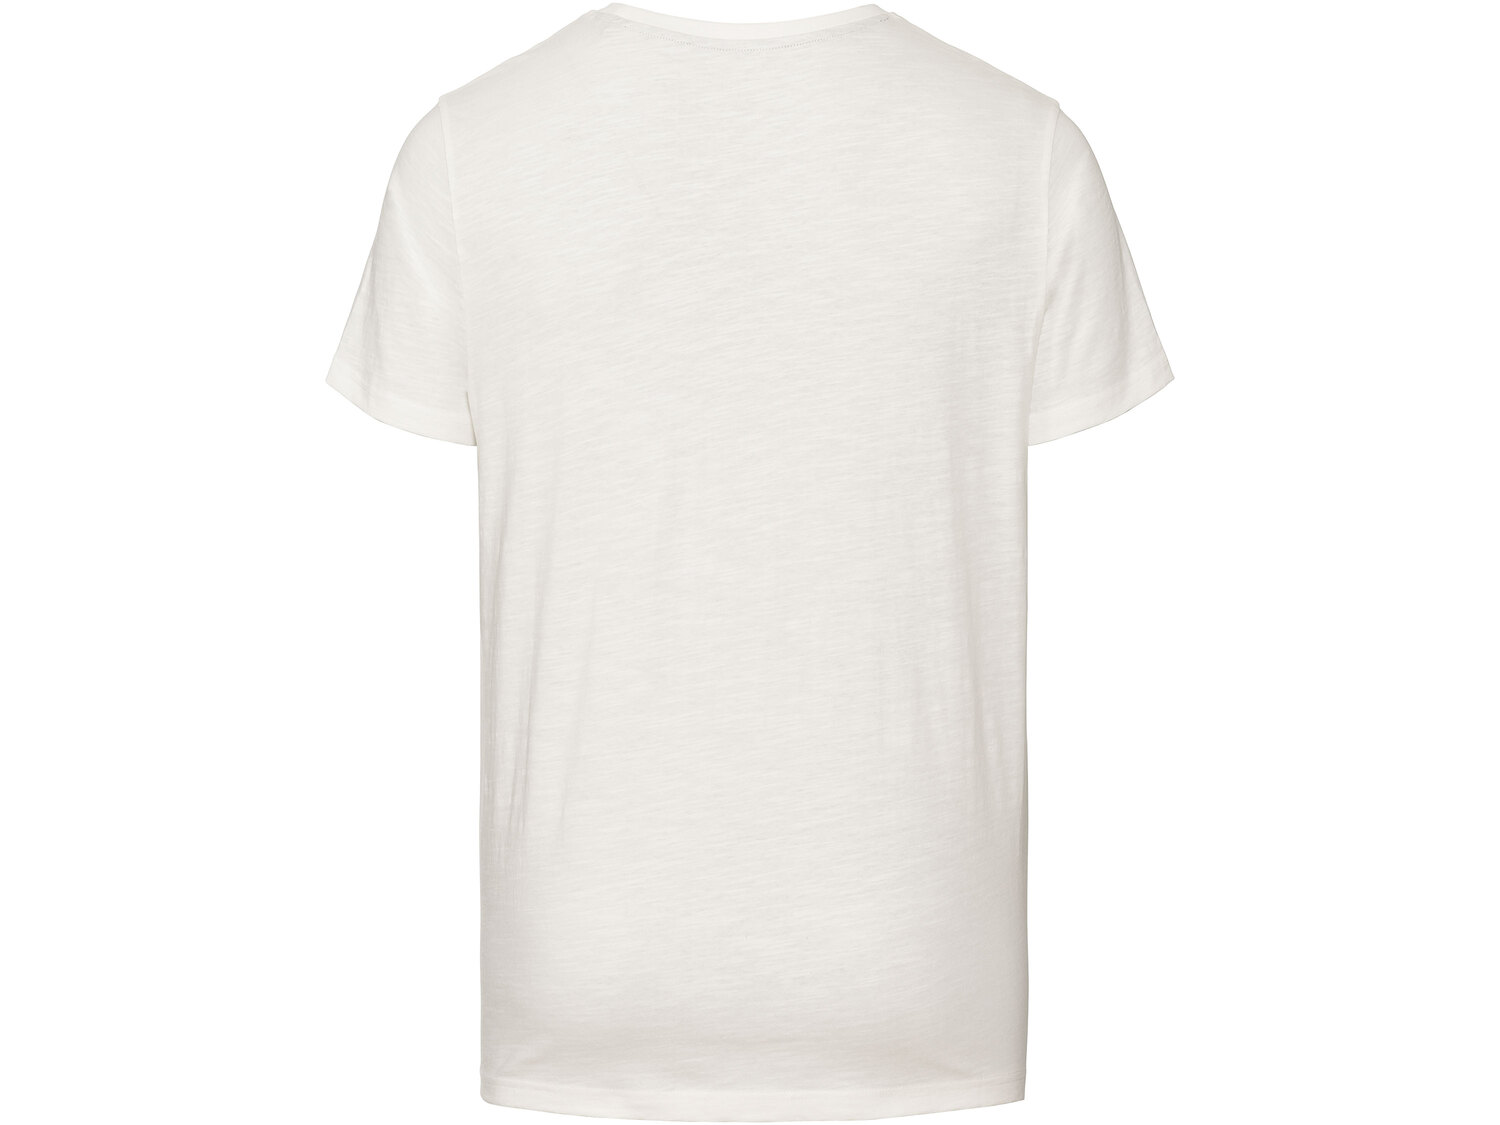 T-shirt męski , cena 21,99 PLN 
- rozmiary: M-XL
- 100% bawełny
Dostępne rozmiary

Opis

- ...